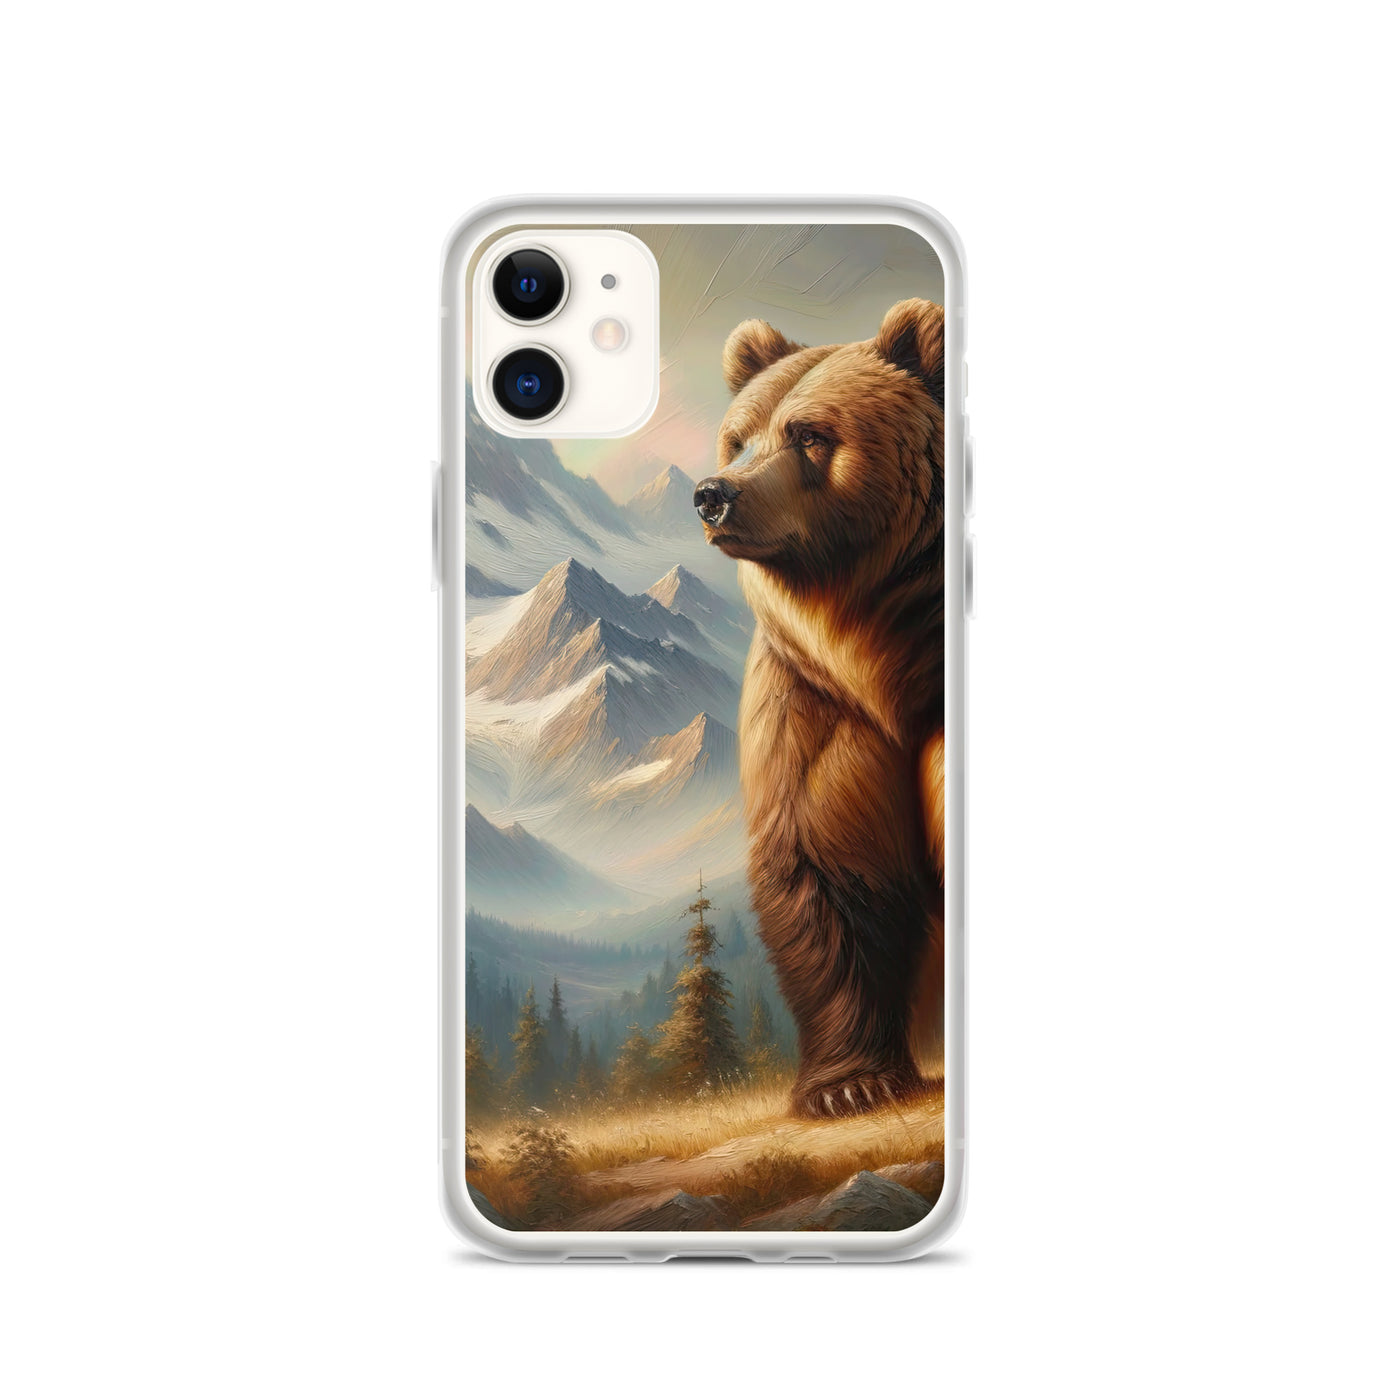 Ölgemälde eines königlichen Bären vor der majestätischen Alpenkulisse - iPhone Schutzhülle (durchsichtig) camping xxx yyy zzz iPhone 11